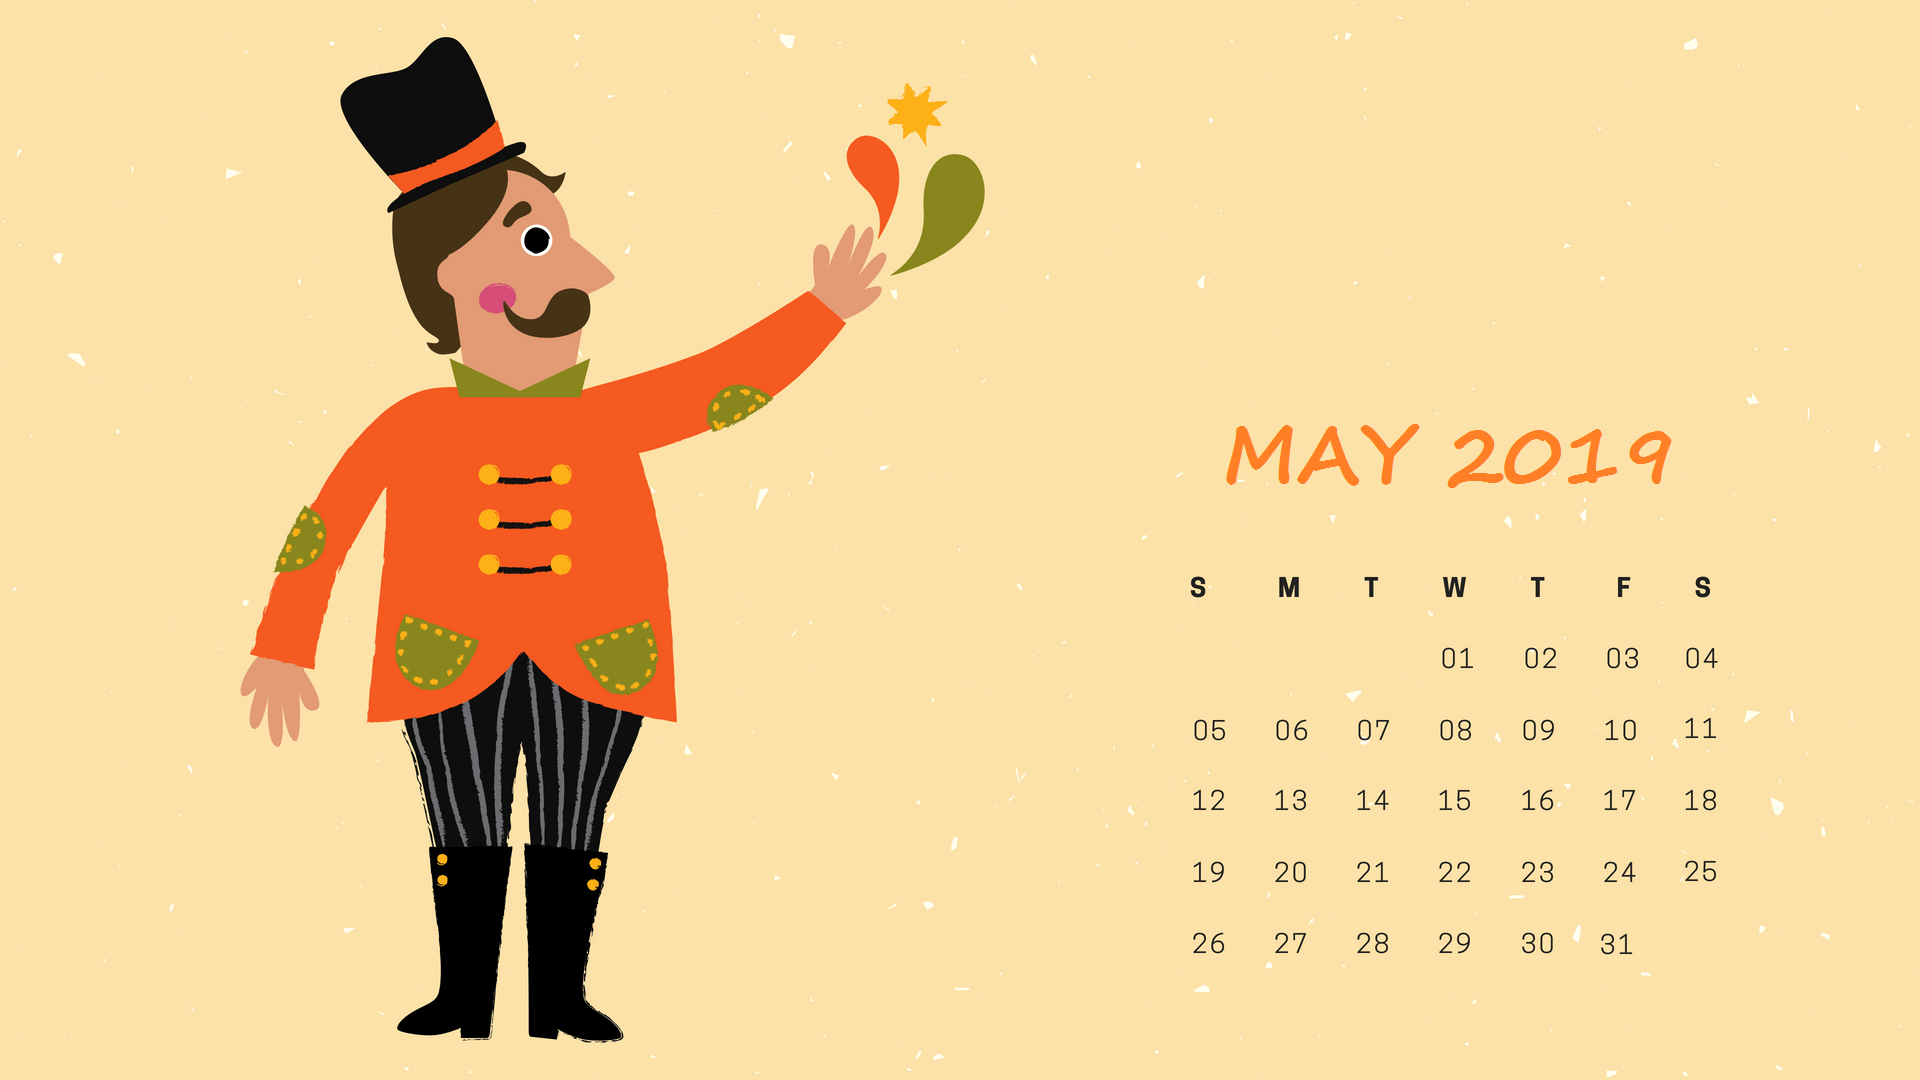 Download May 2019 Calendar Wallpaper #may #may2019 #maycalendar